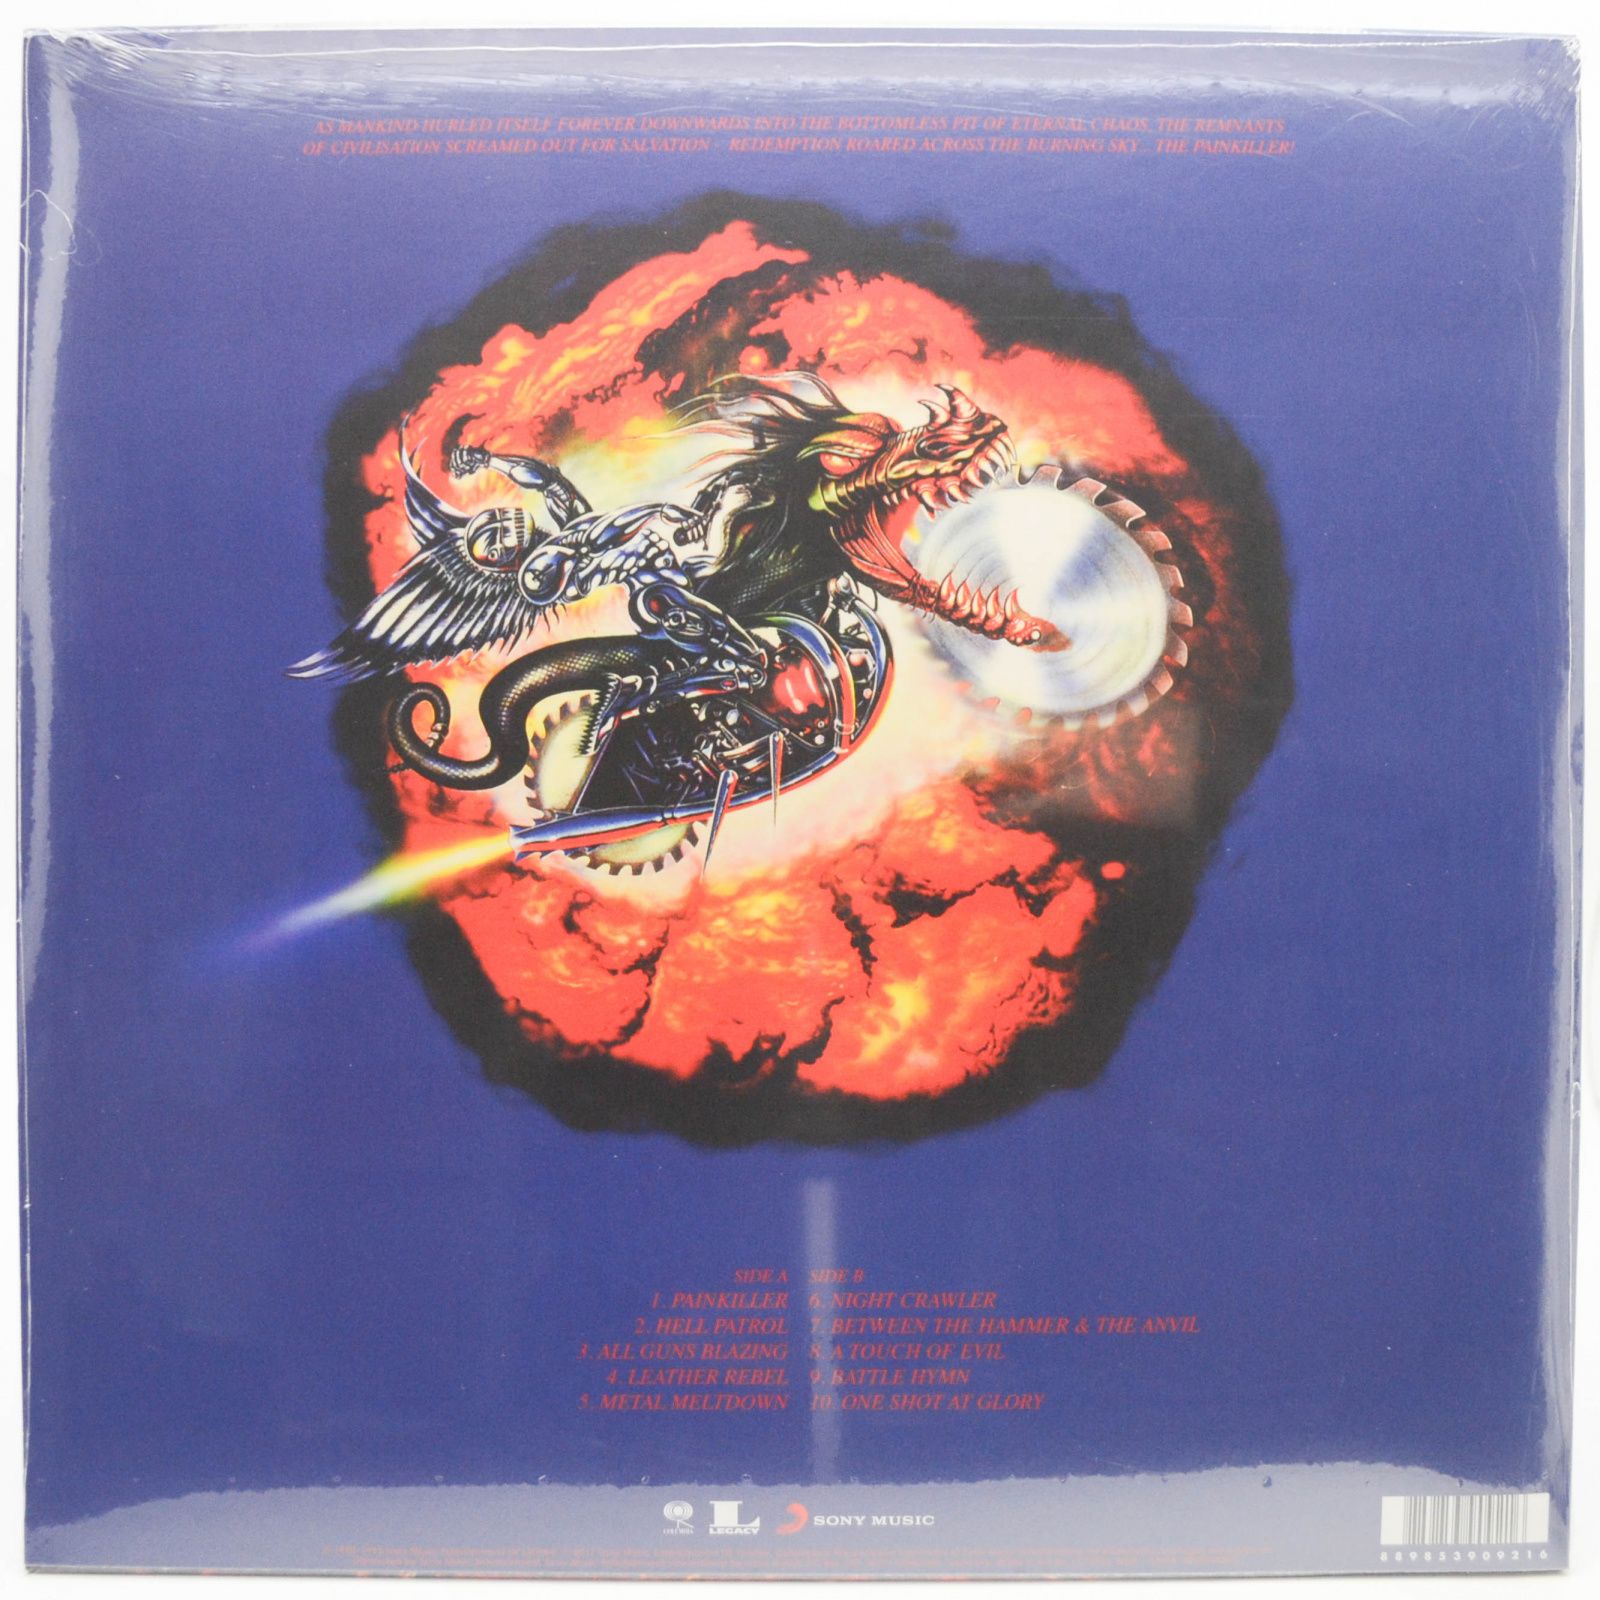 Judas Priest — Painkiller (UK), 1990